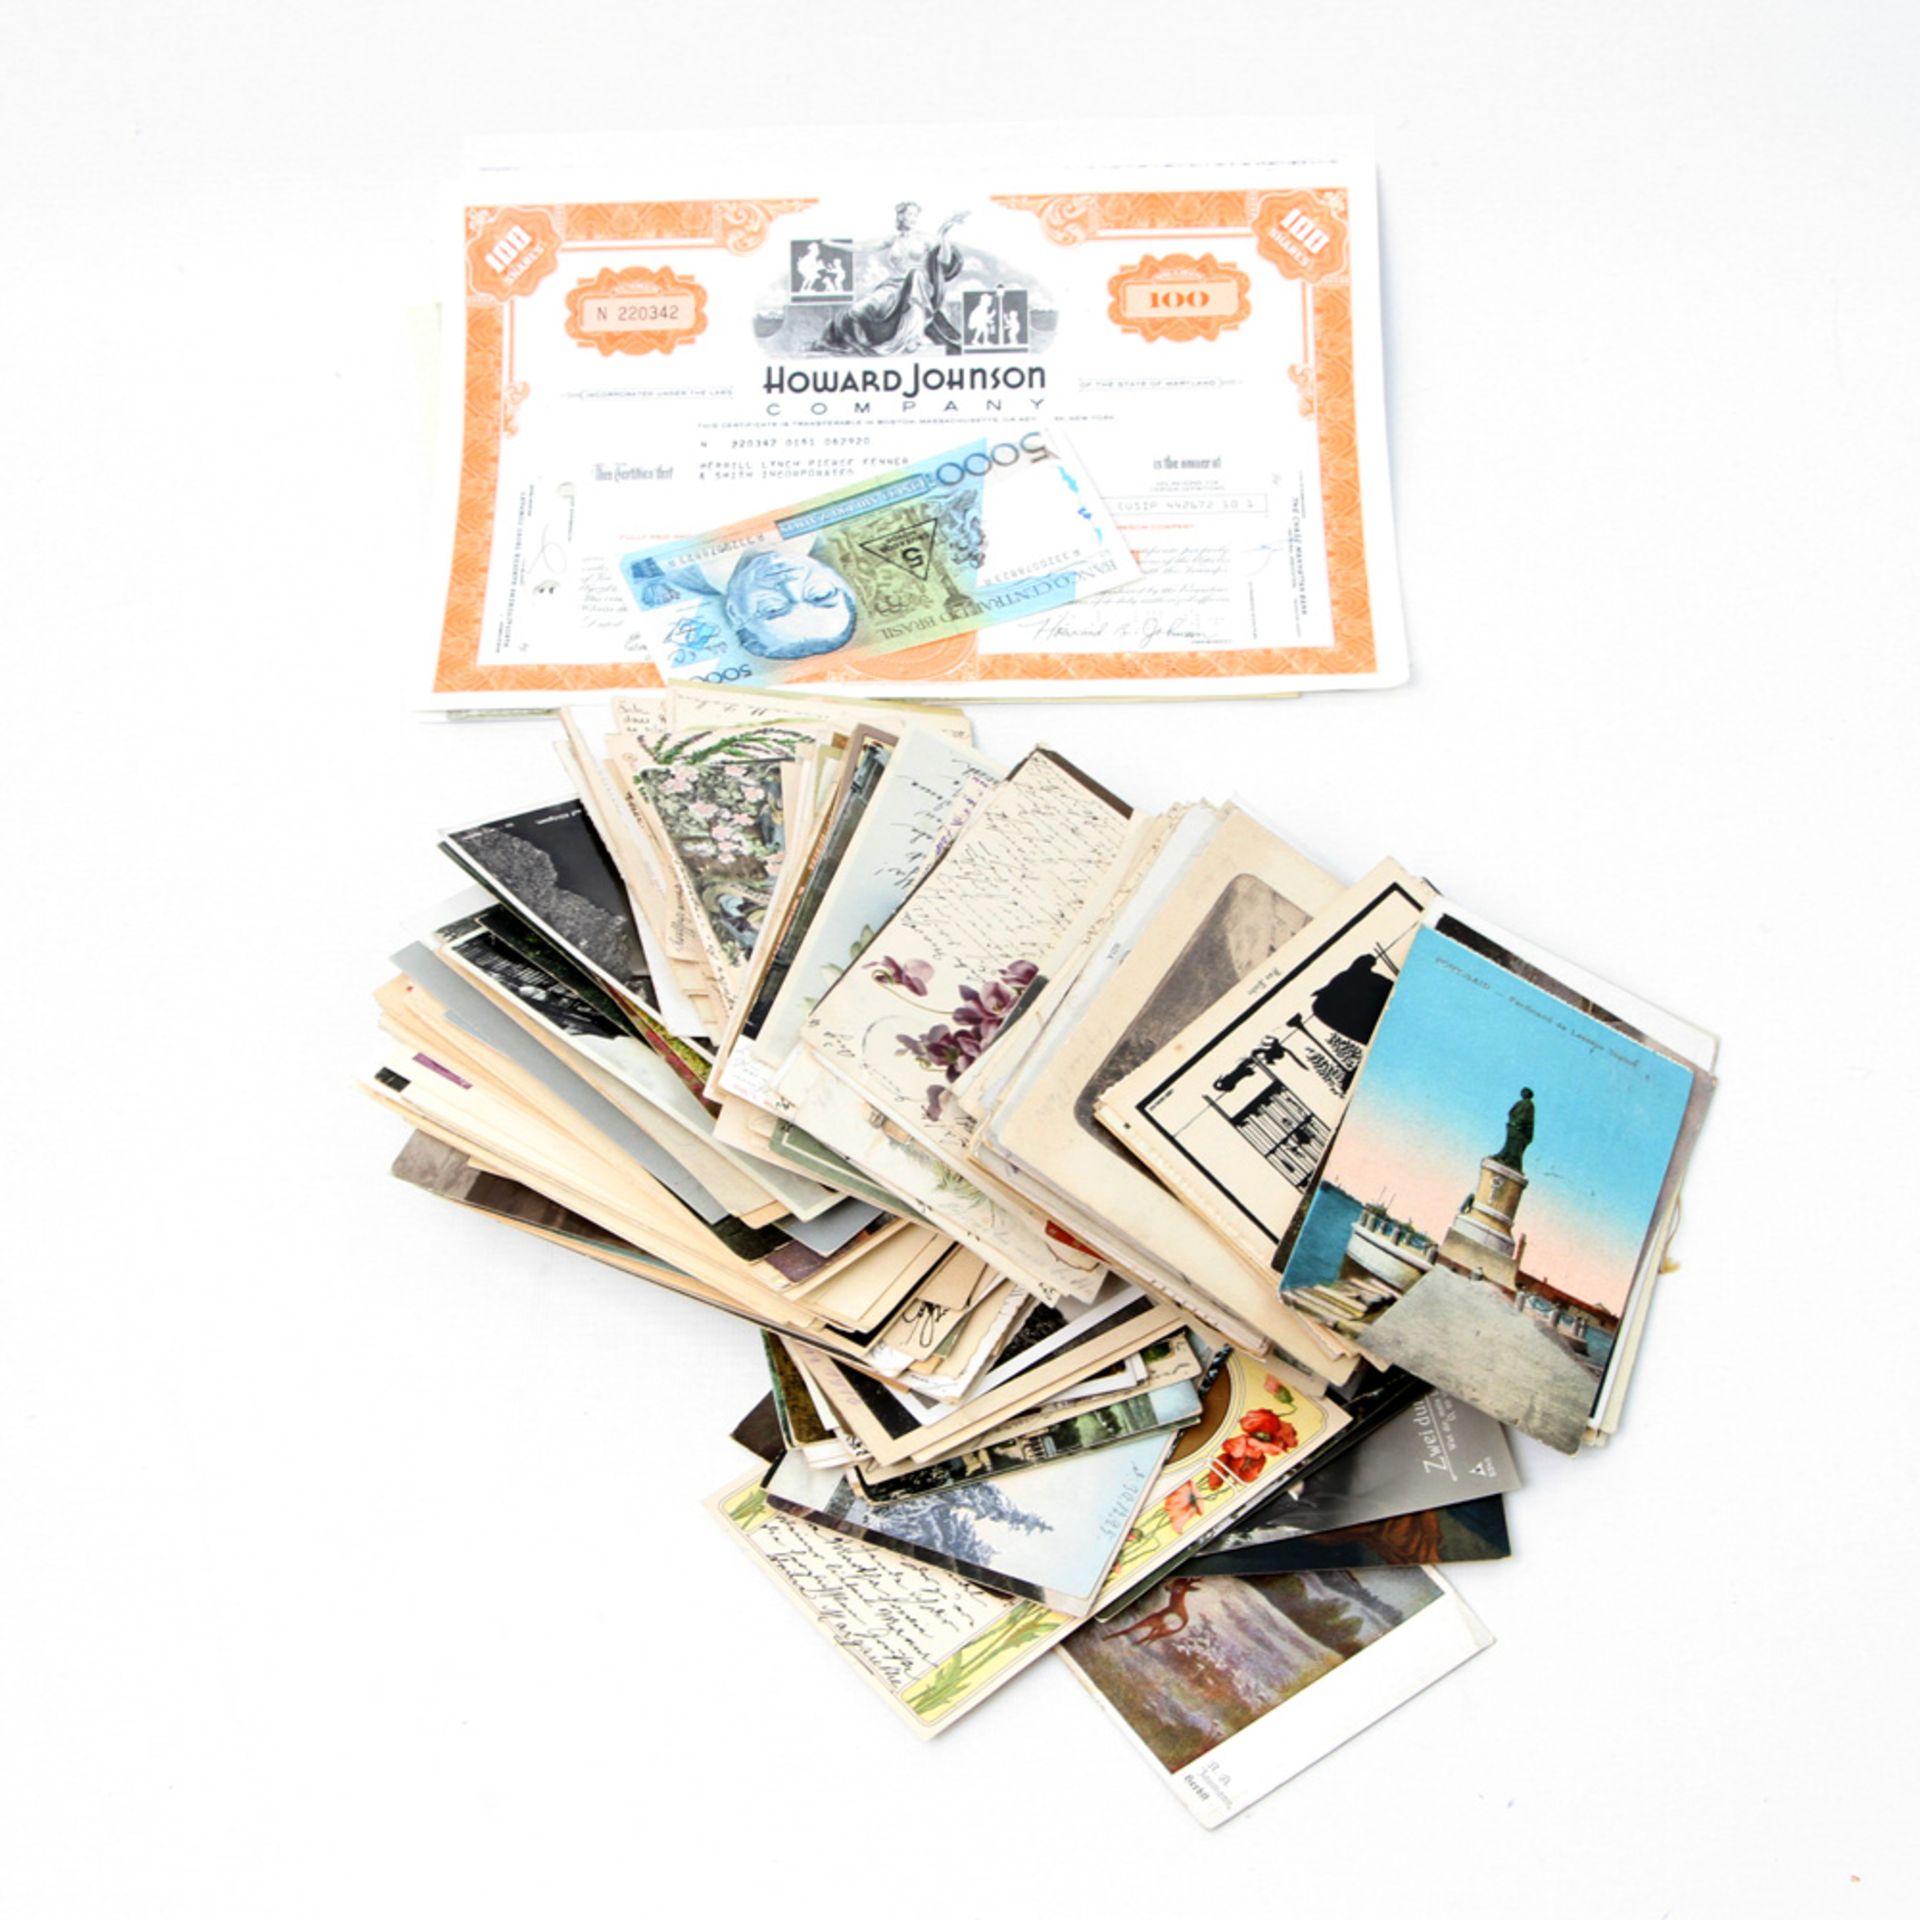 Postkarten - sehr schöner Bestand an Postkarten, dabei einige "Gruß aus Karten" und